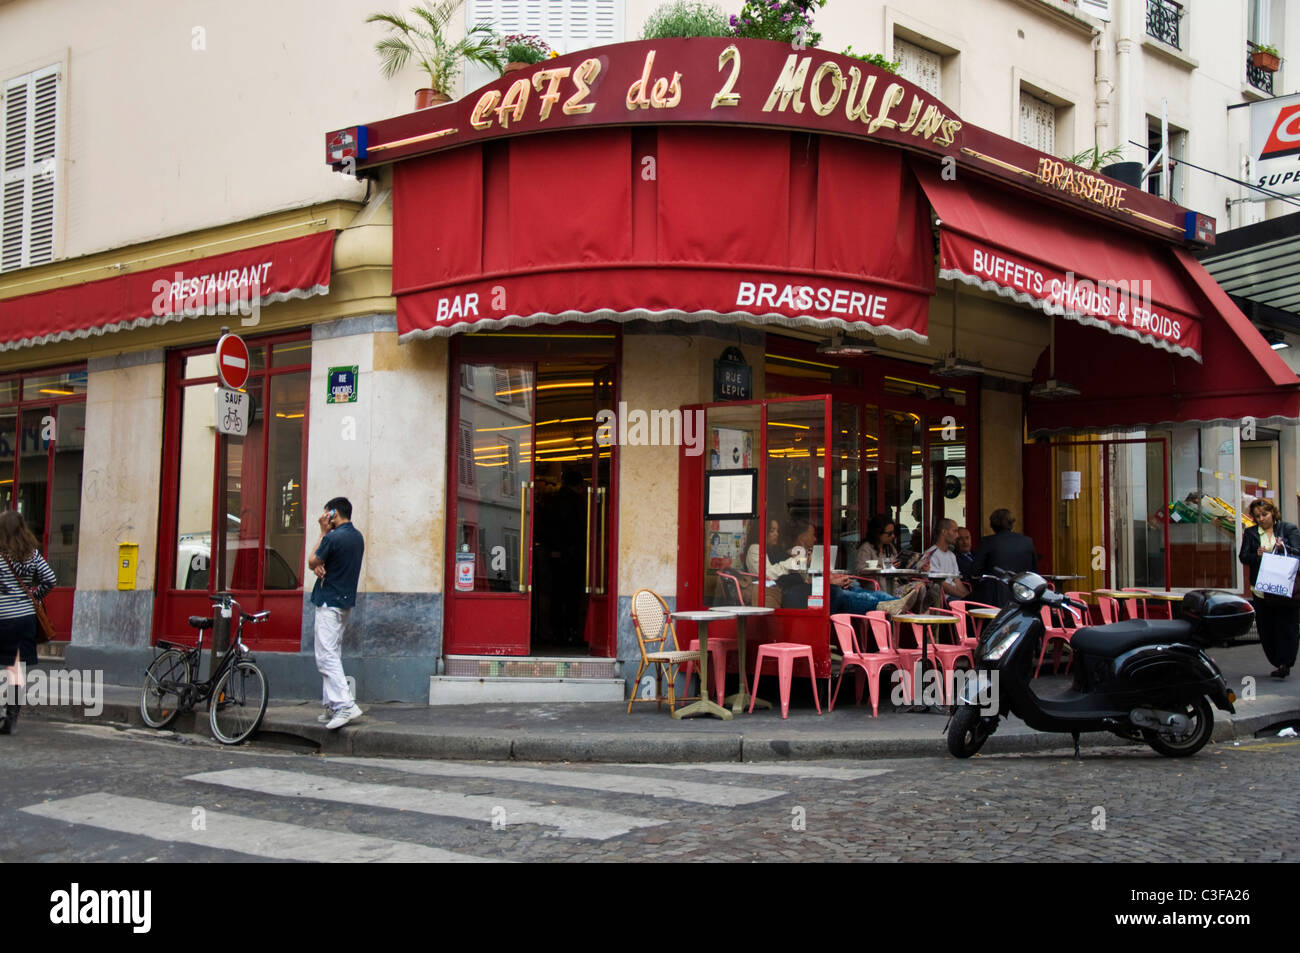 Des deux moulins cafe bar tabac dans le film Amélie Rue Lepic 18e Montmartre Paris France Banque D'Images